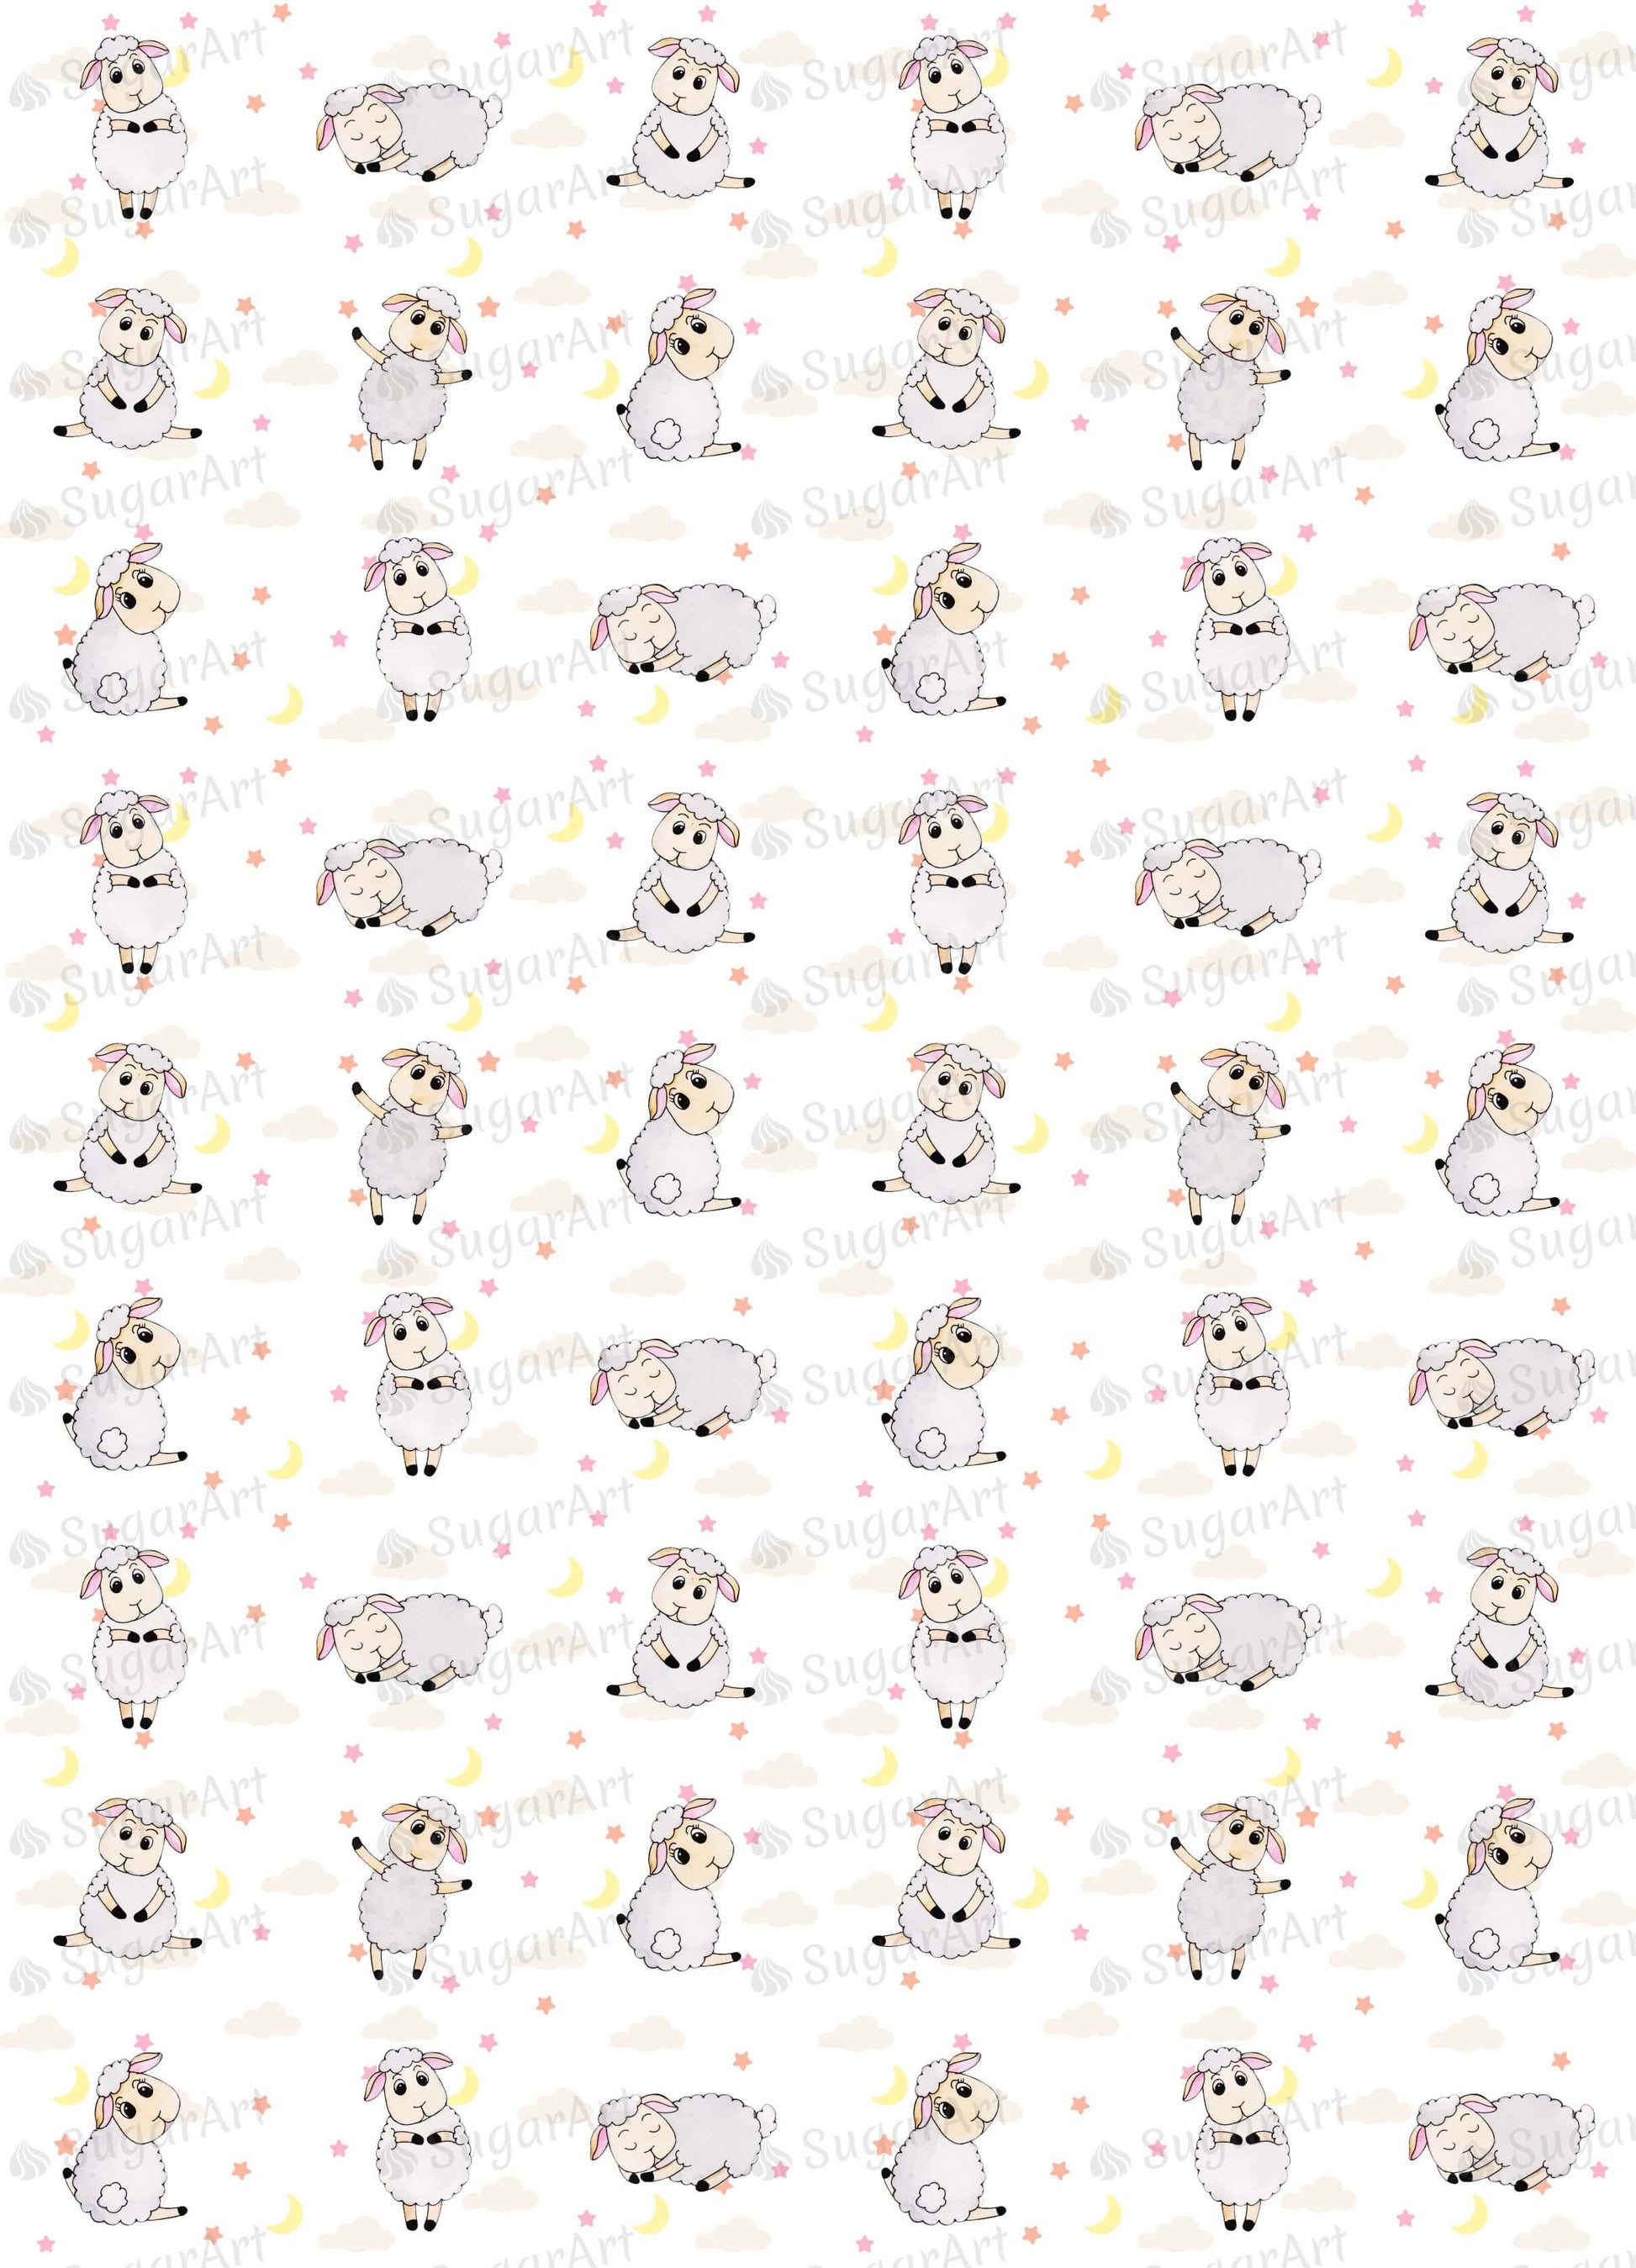 Cute Watercolor Sheep Collection - ESA081-Sugar Stamp sheets-Sugar Art